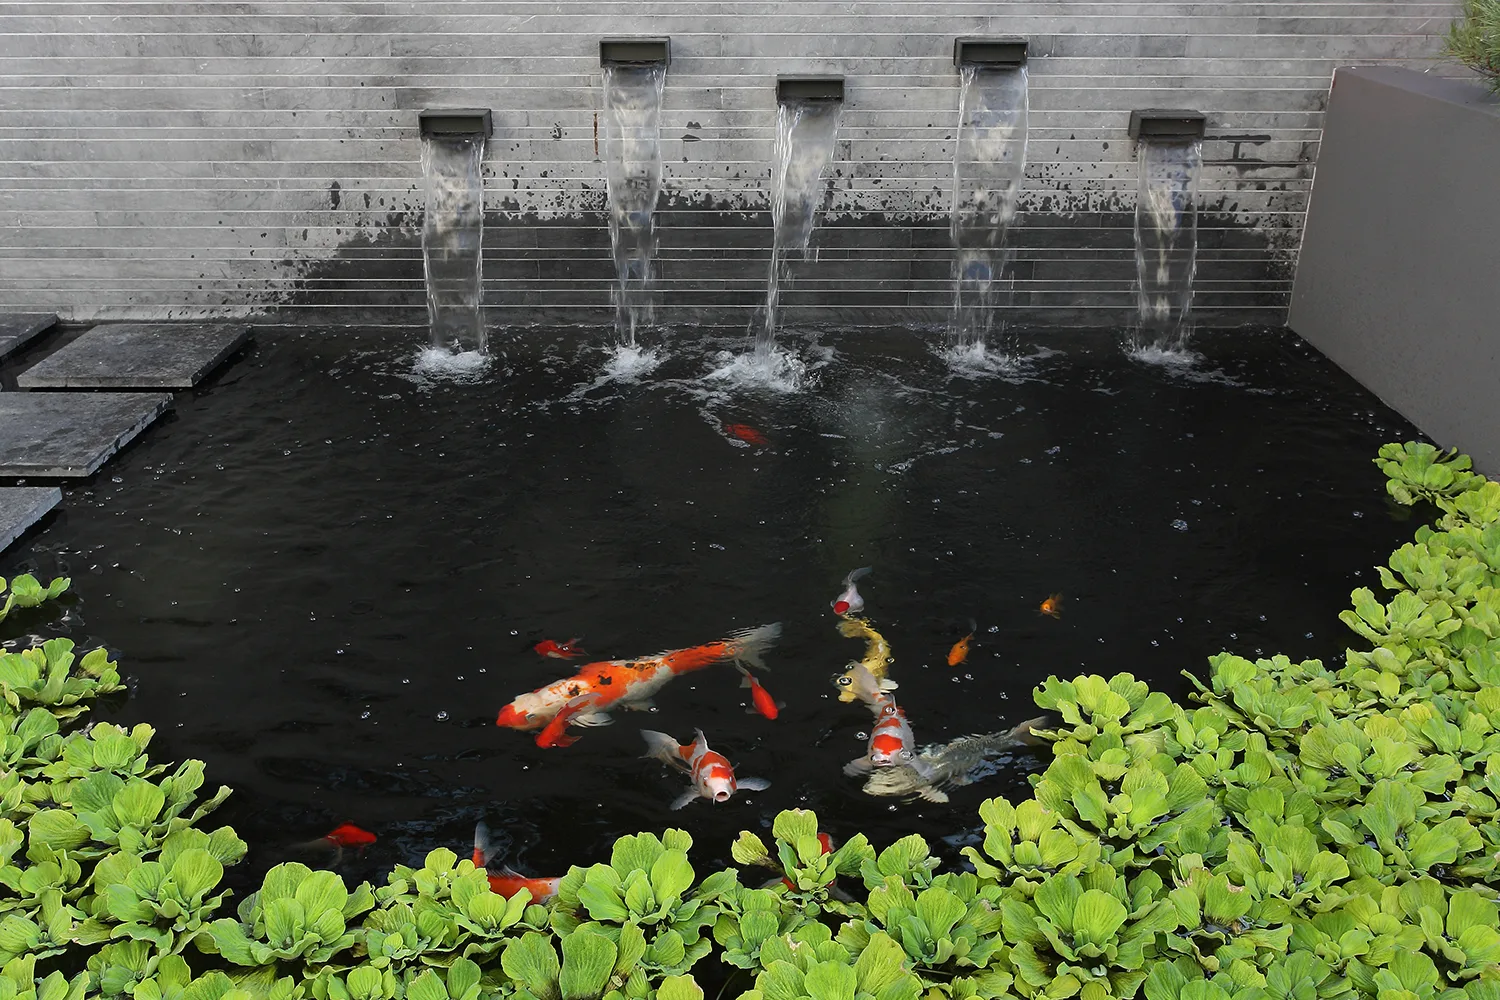 Thi Công Hồ Cá Koi đạt Chuẩn Yêu Cầu Tại Hà Nội – Bảo Hành Dài Hạn – Hotline 0976870033